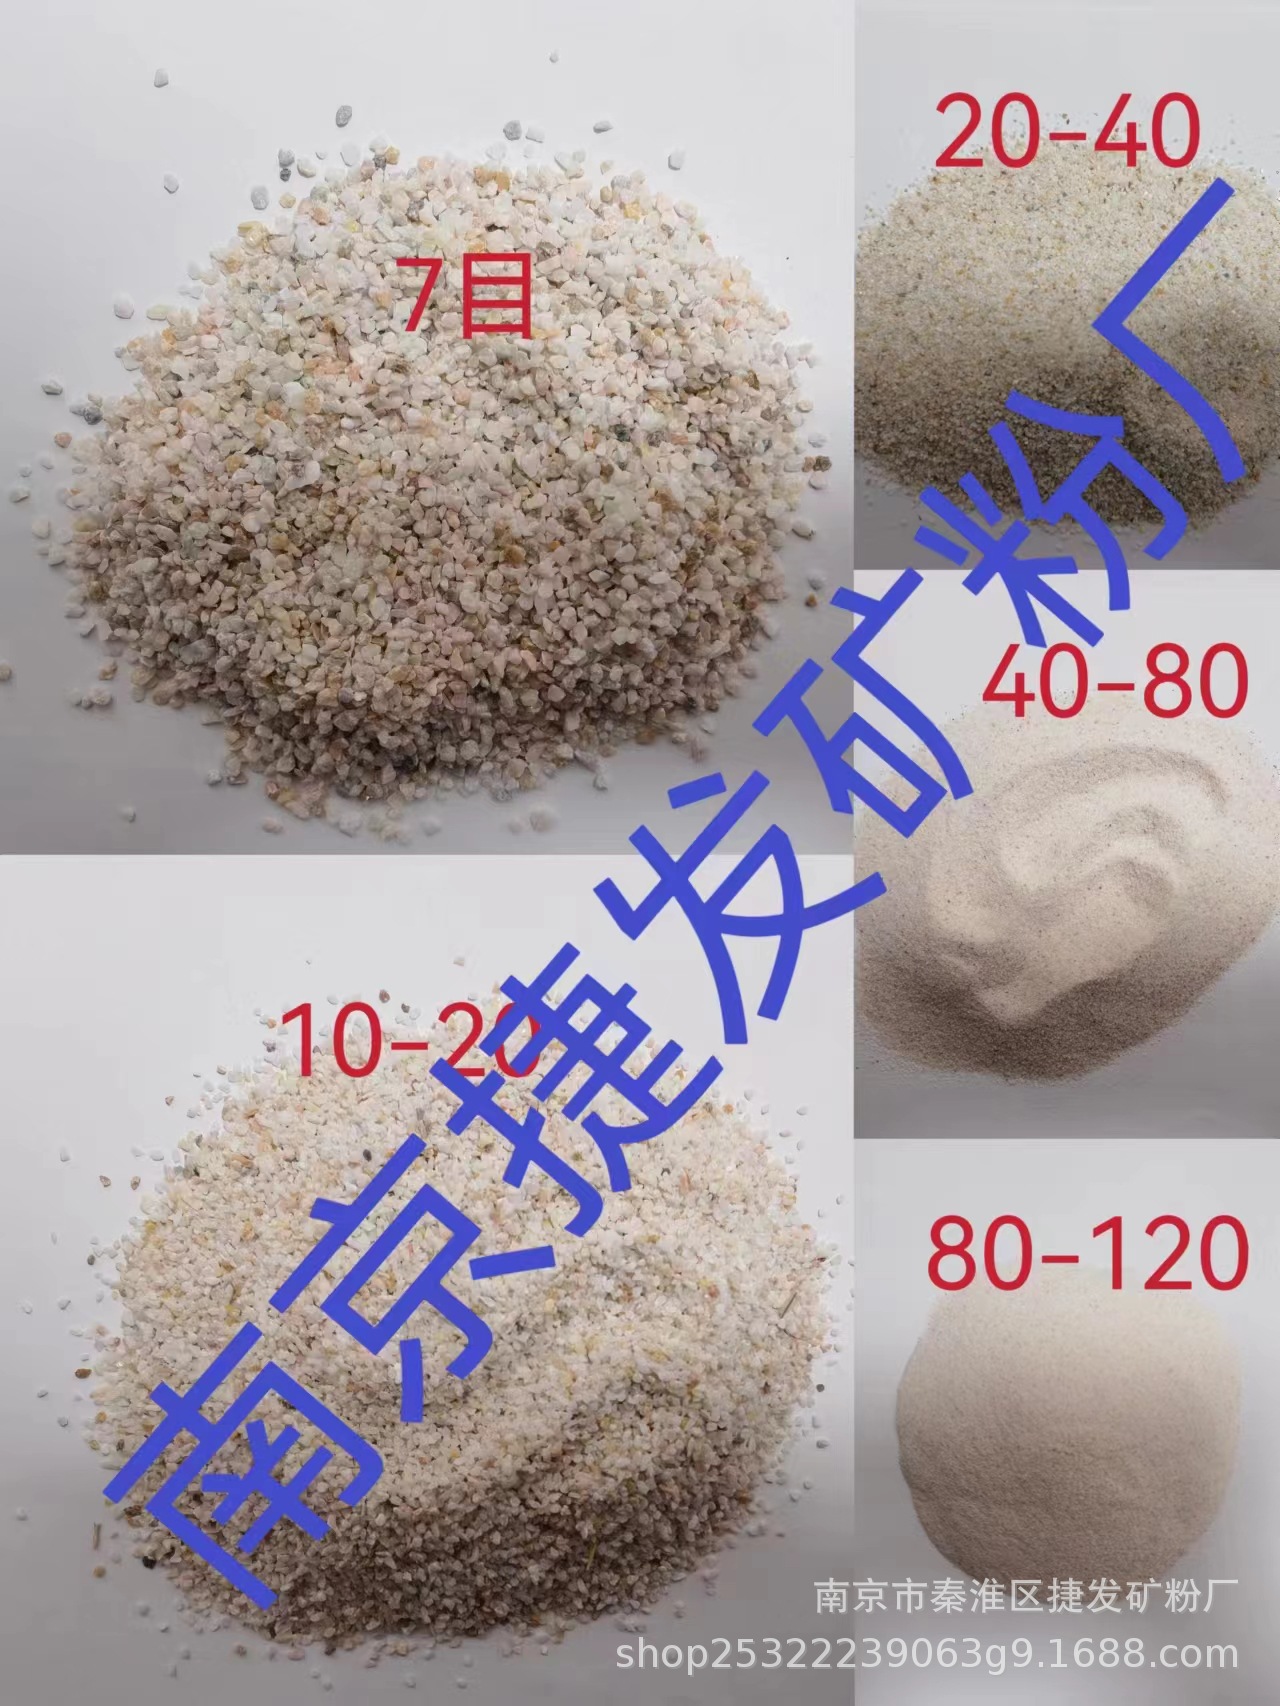 石英砂图片、石英砂的用途、石英砂成分、石英砂及规格、石英砂